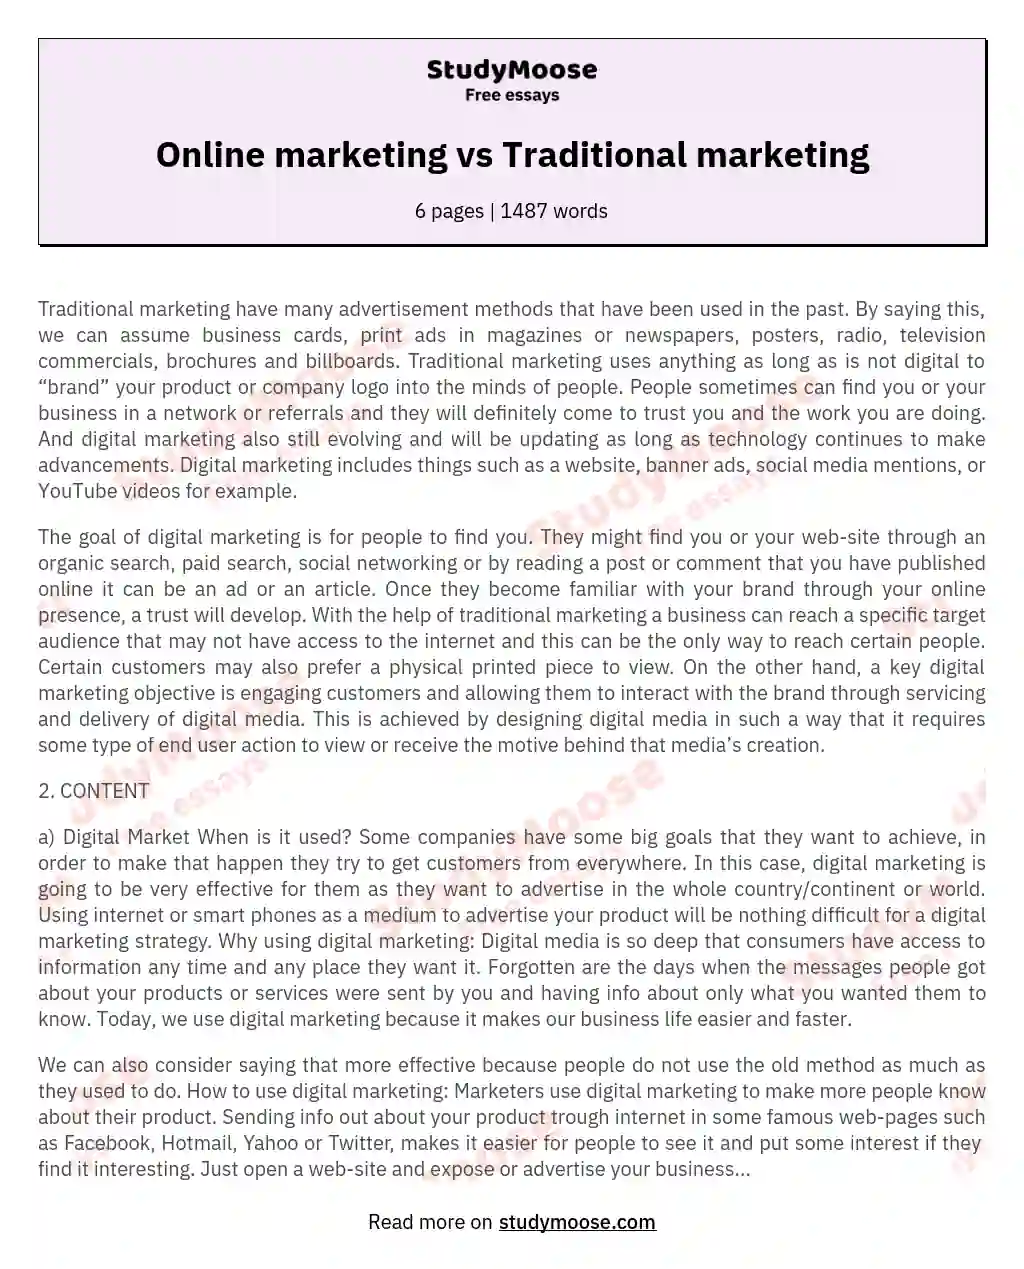 Online marketing vs Traditional marketing essay